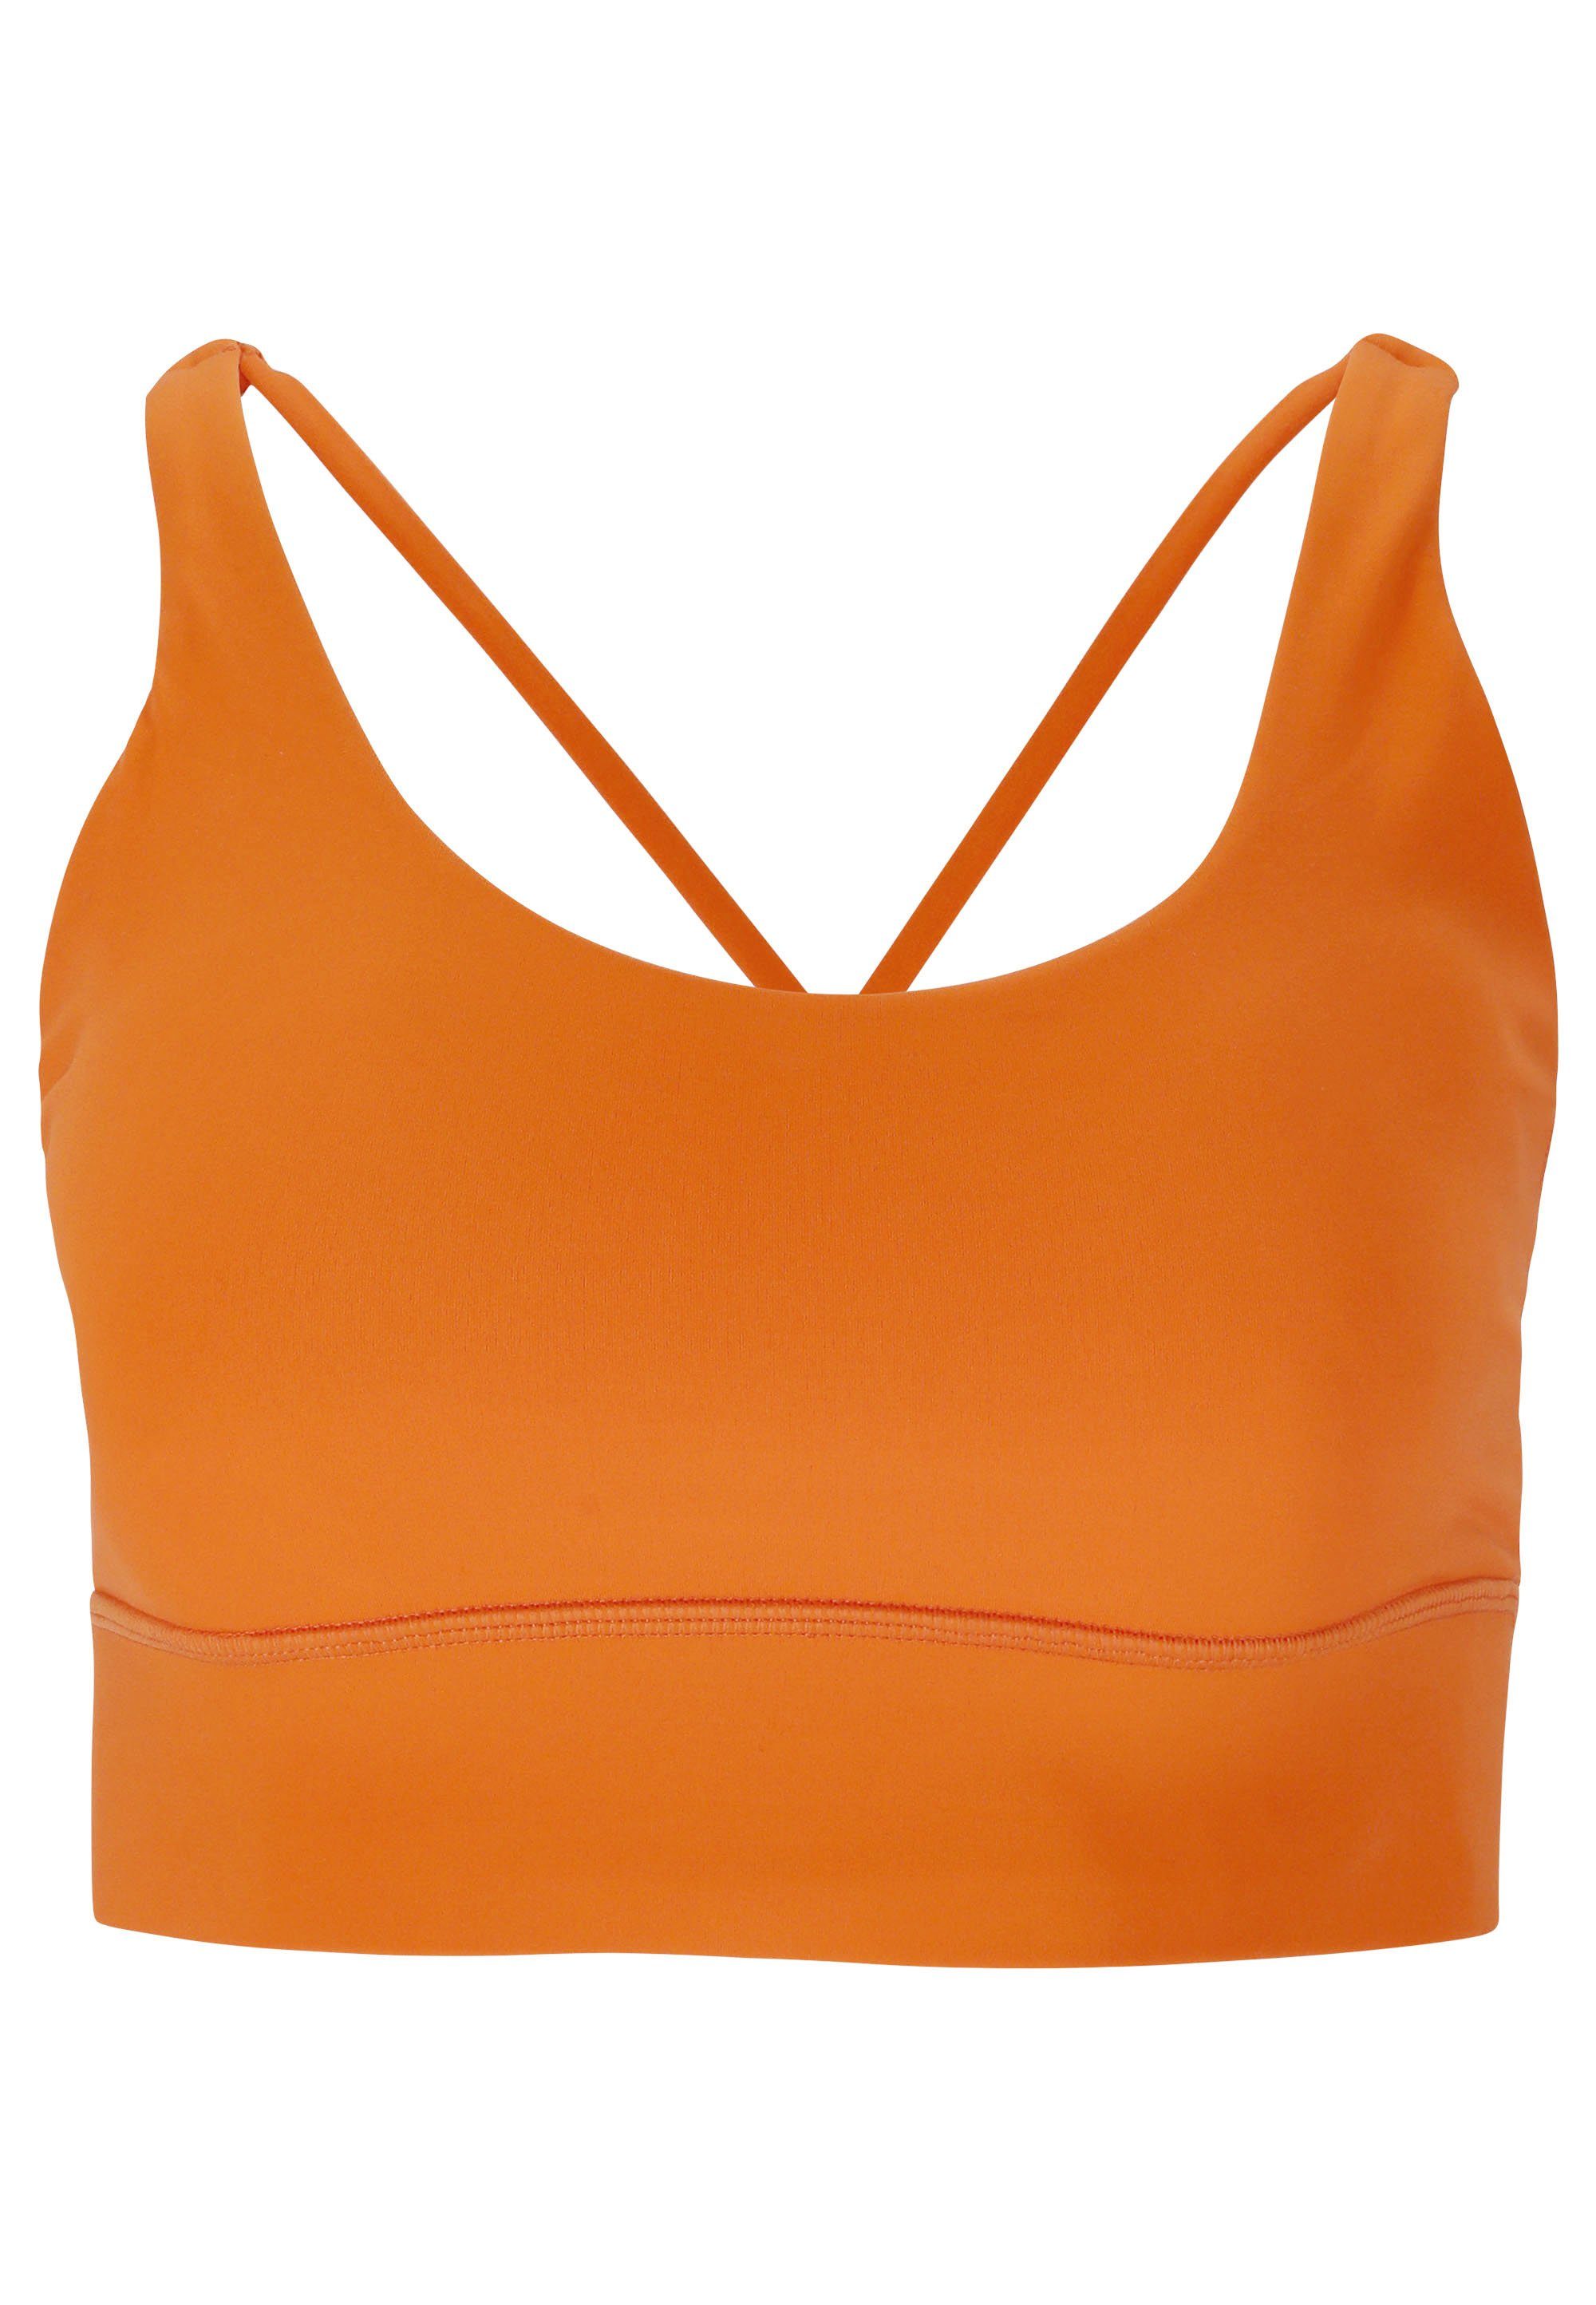 ATHLECIA Sport-BH Gaby aus feuchtigkeitsregulierendem orange Material